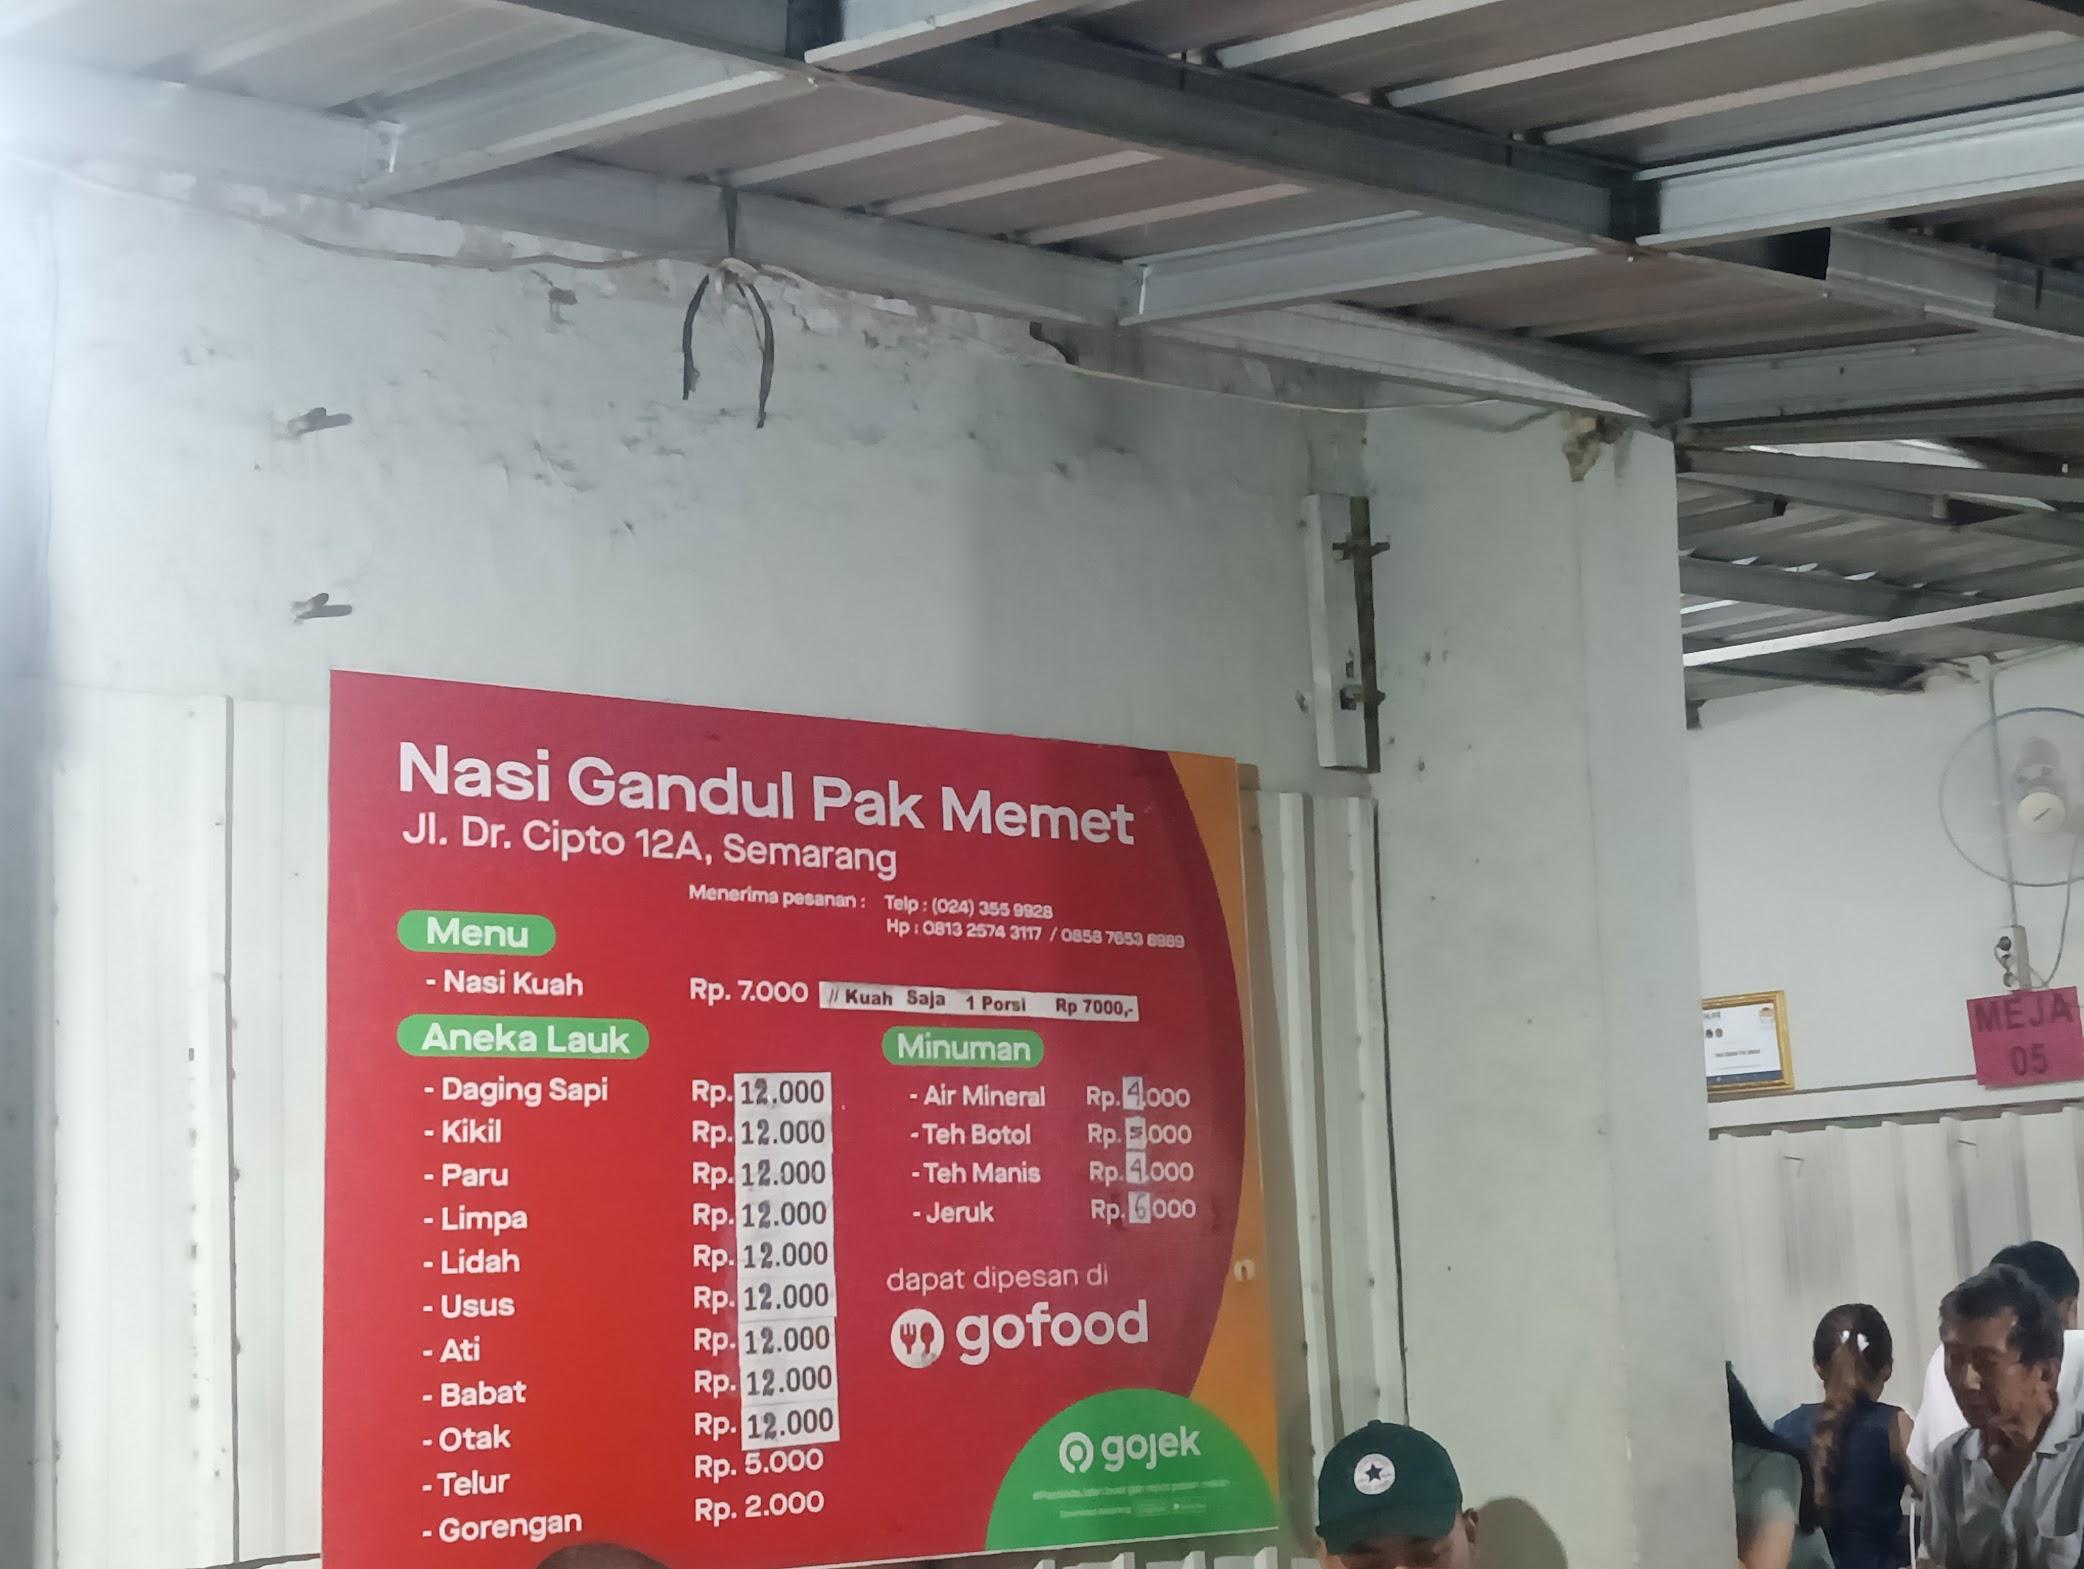 Nasi Gandul Pak Memet review